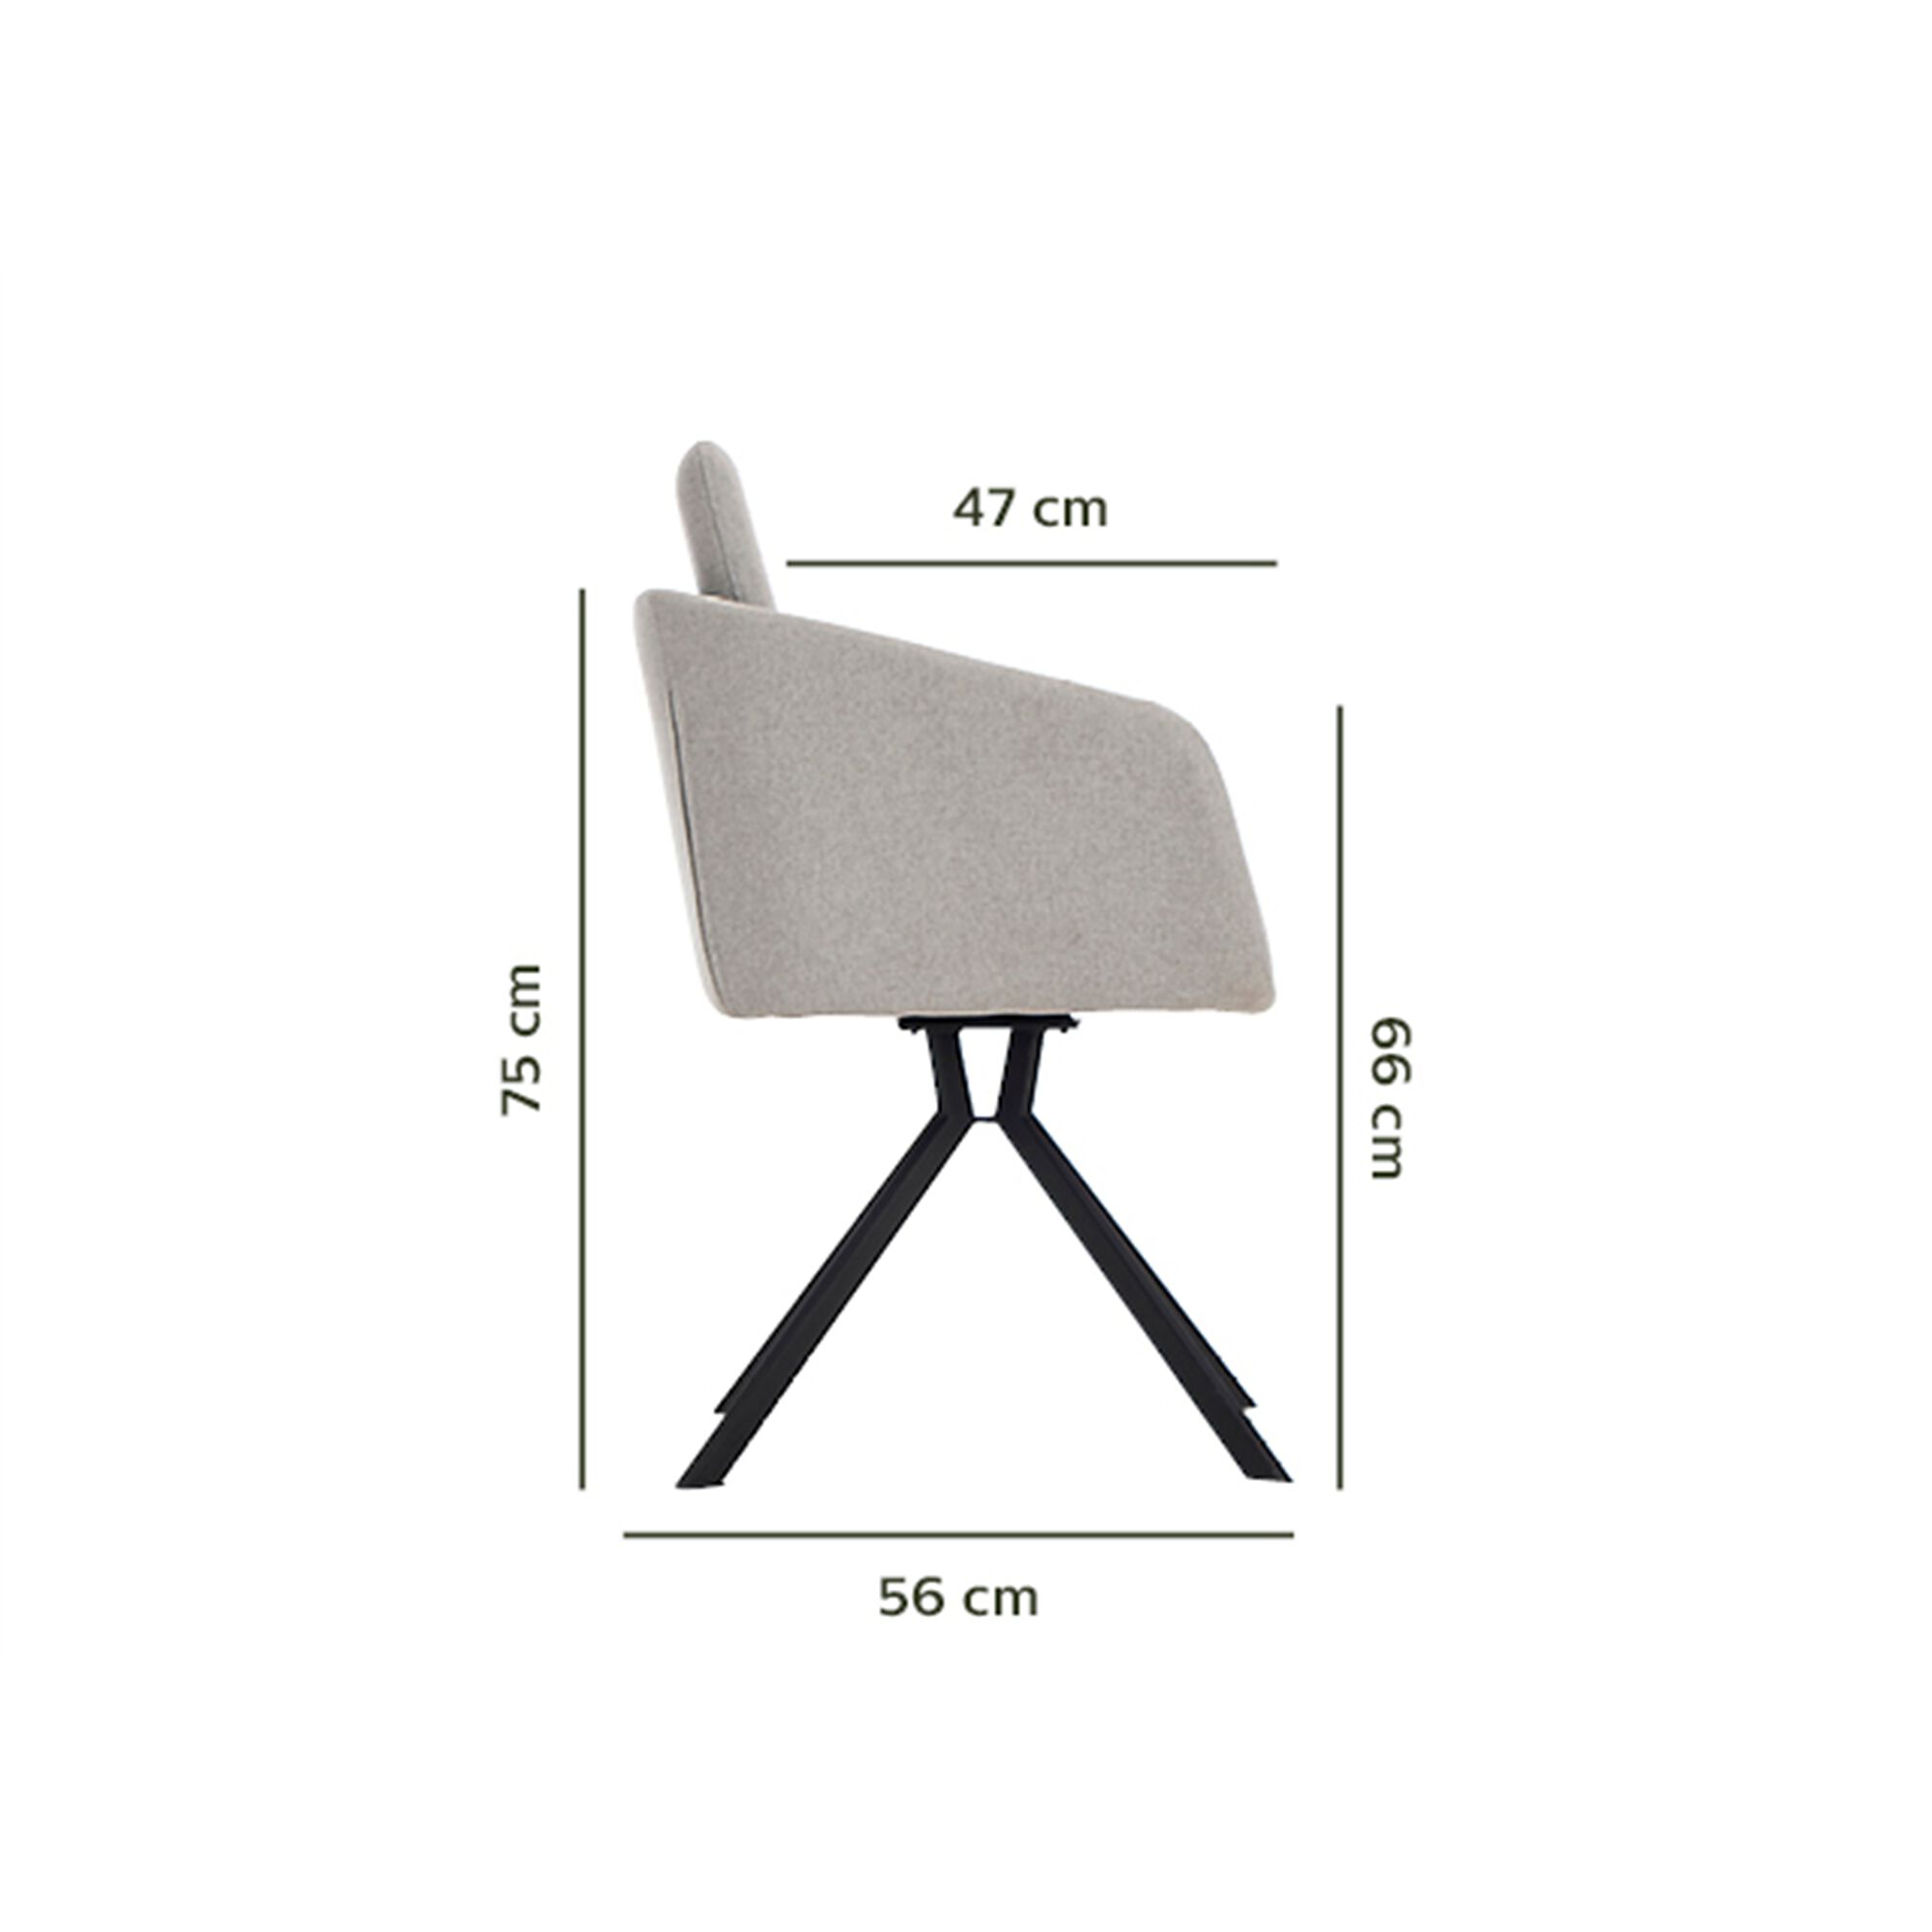 Chaise pivotante avec accoudoirs en tissu - gris borie-CAMARGUE